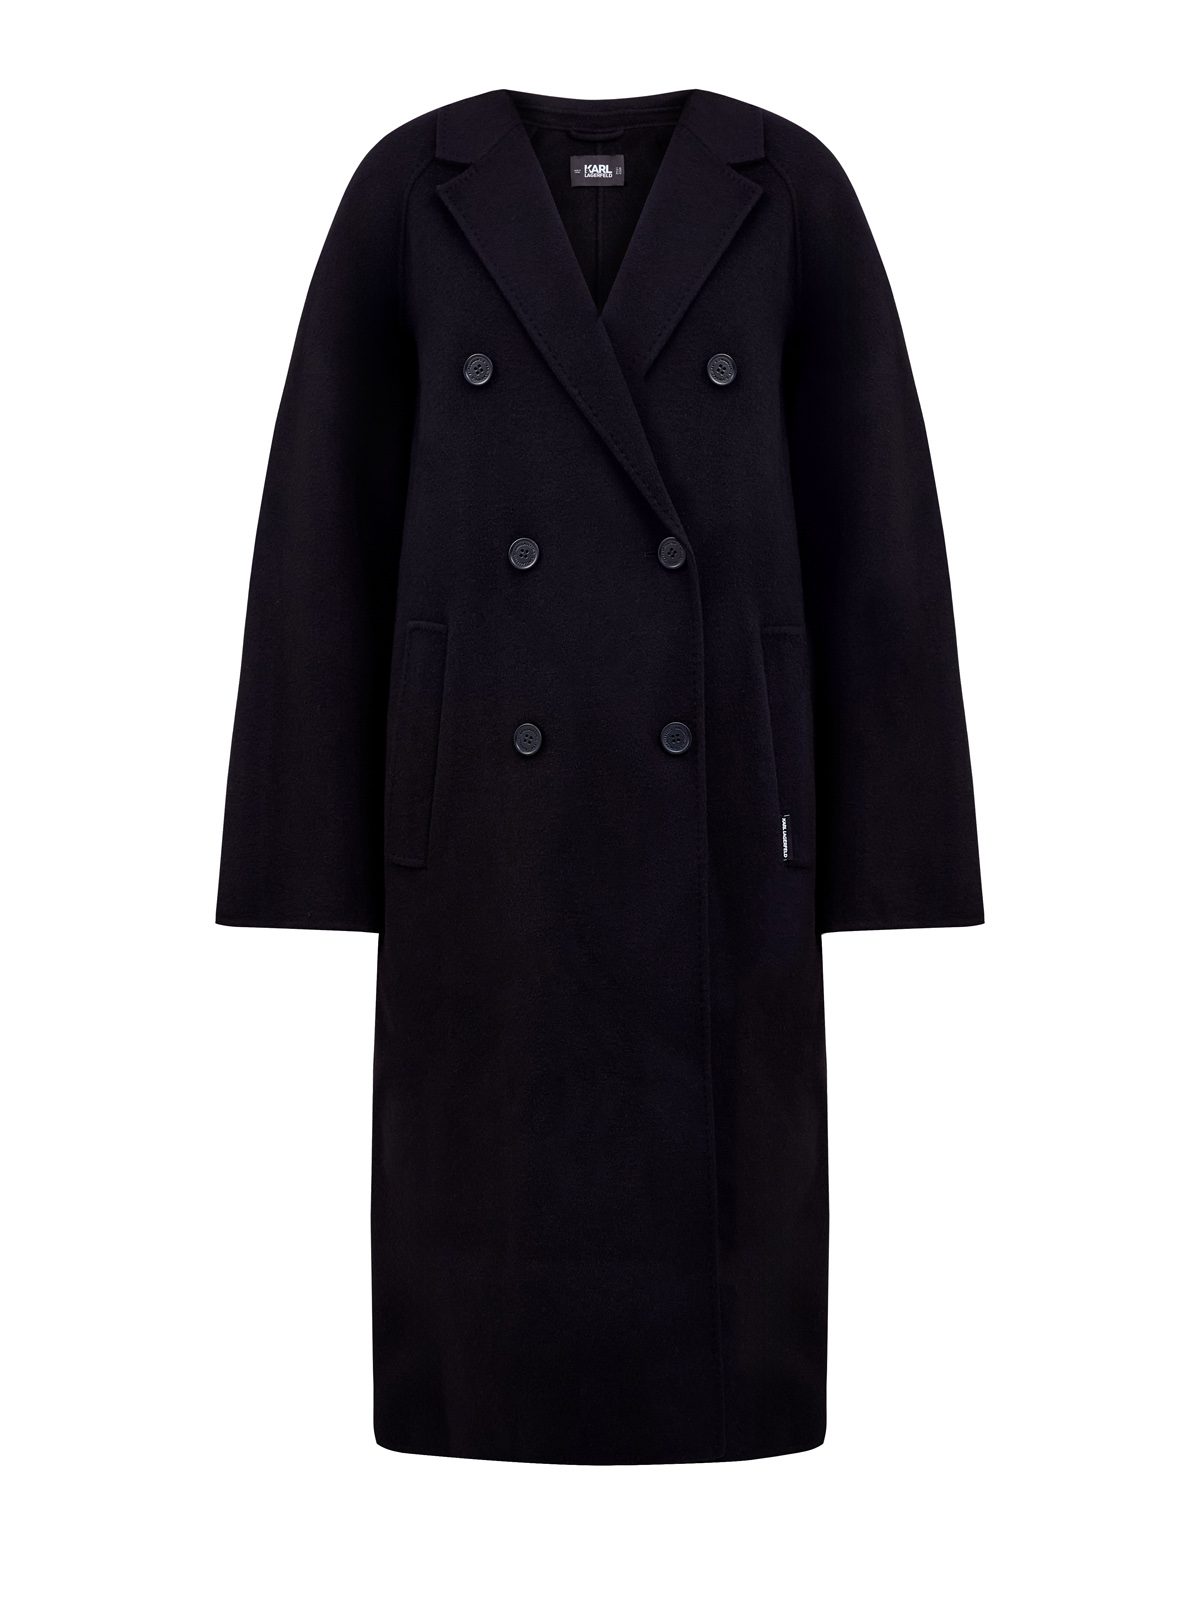 Двубортное пальто кроя oversize из плотной шерстяной ткани KARL LAGERFELD, цвет черный, размер 42;44;46;48 - фото 1